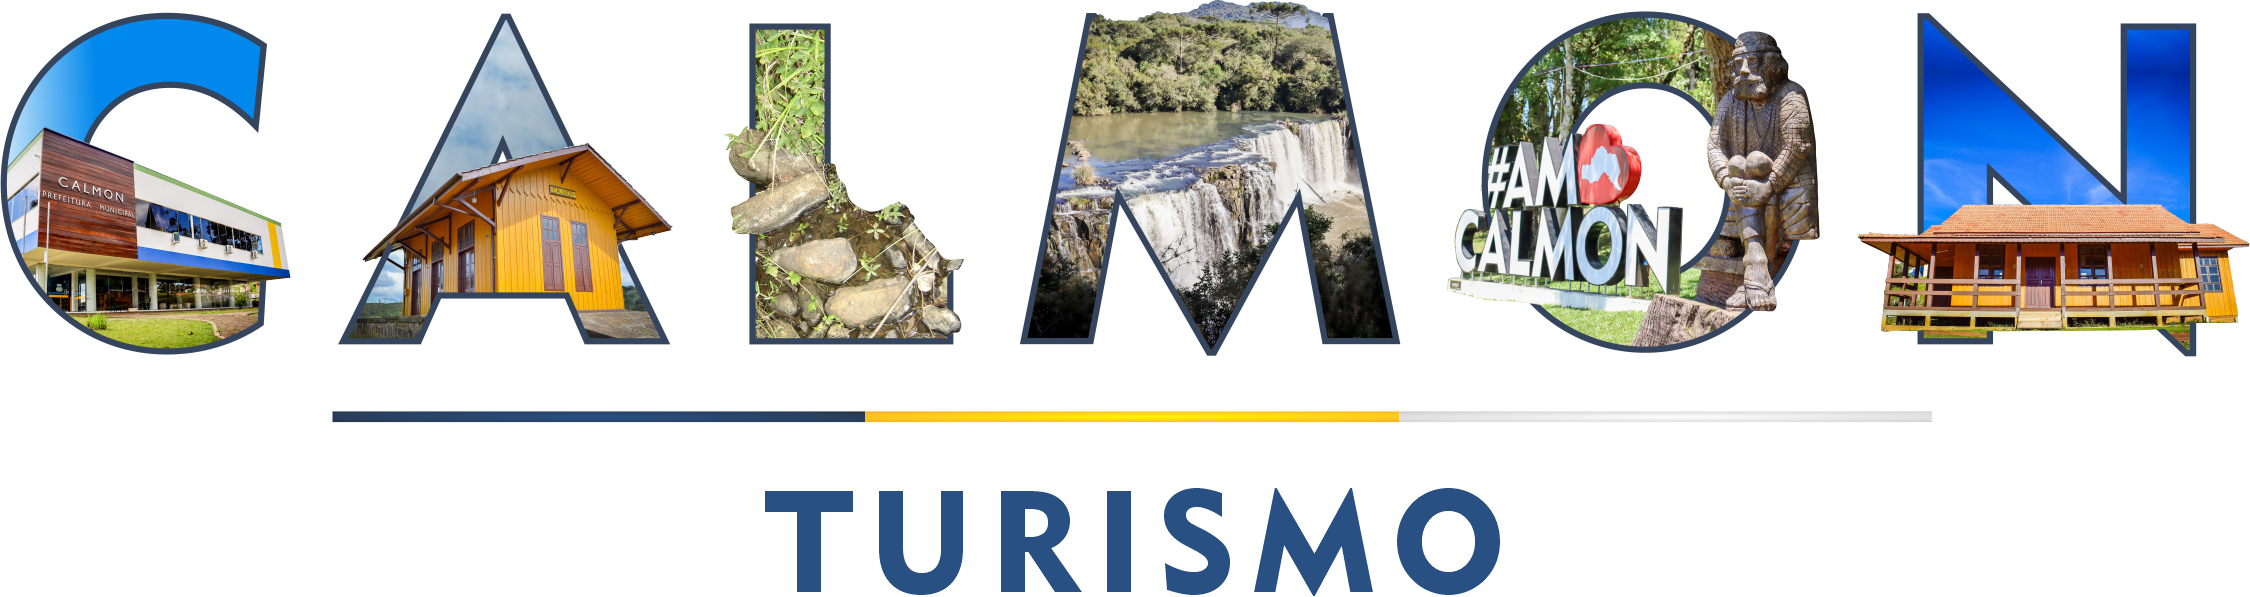 Portal Municipal de Turismo de Calmon